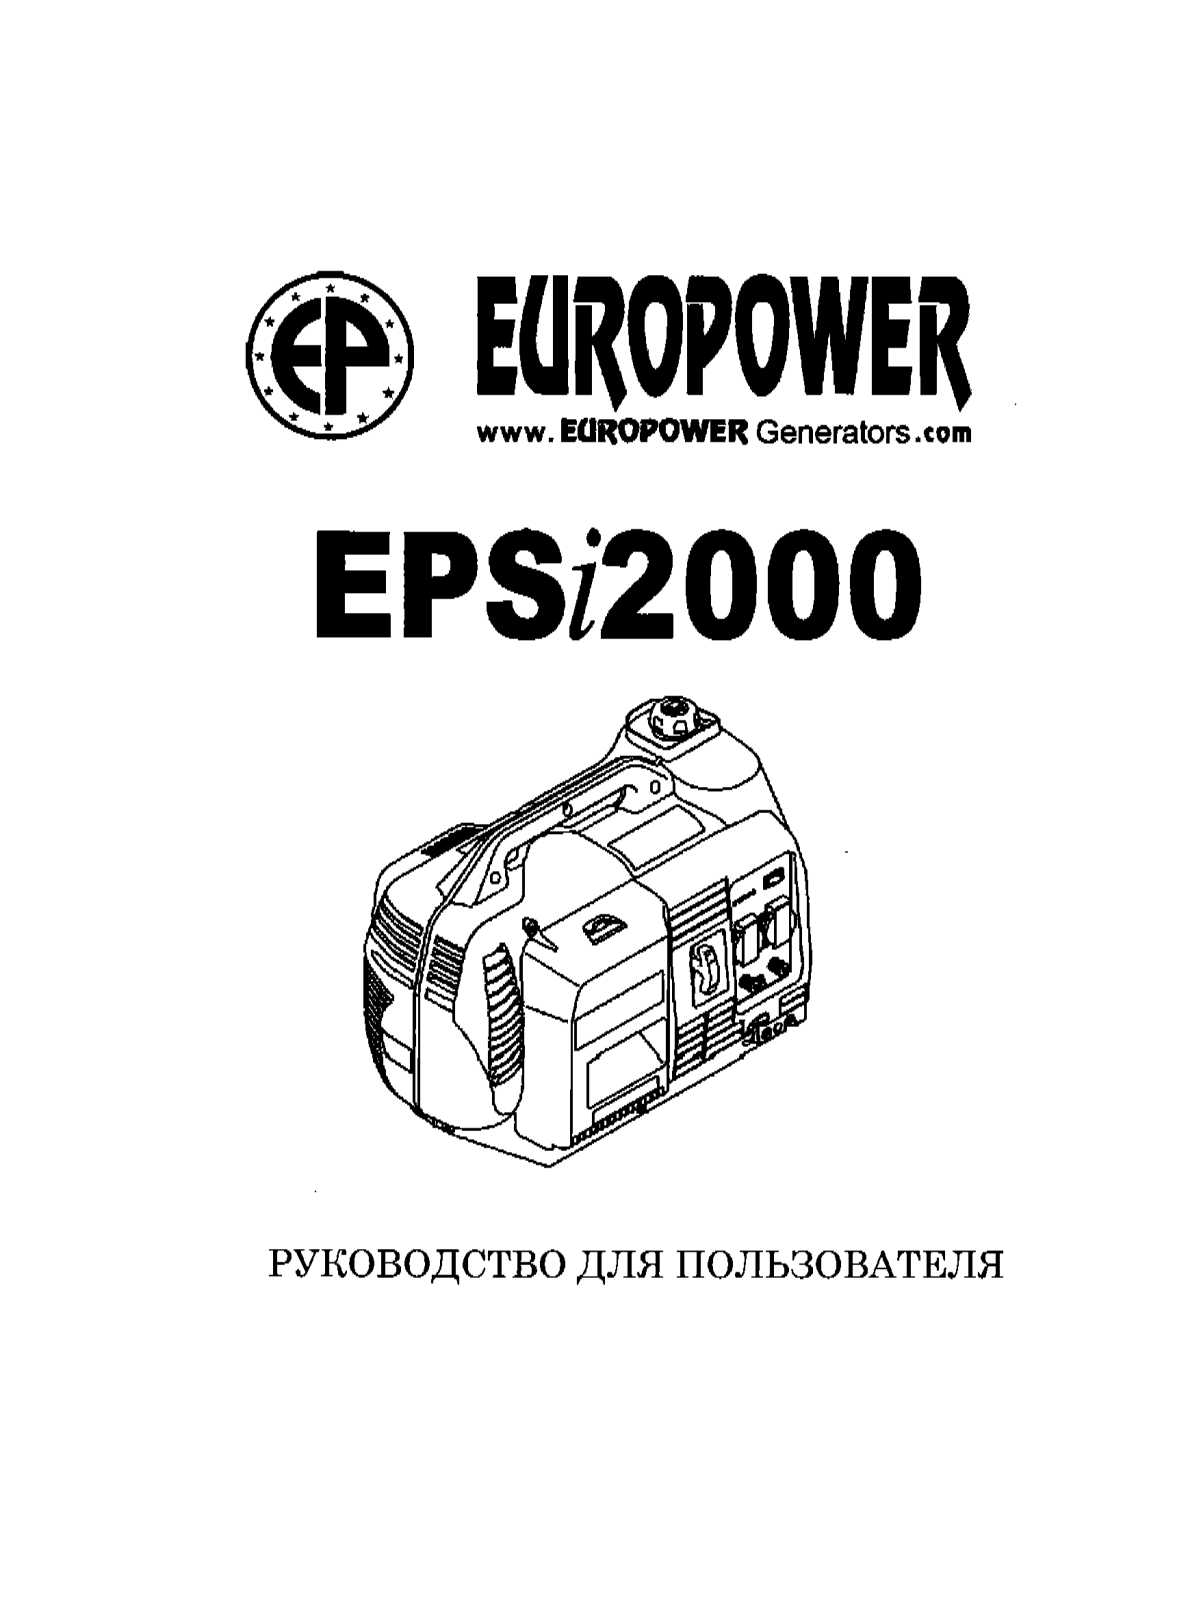 Europower EPSi2000 User Manual